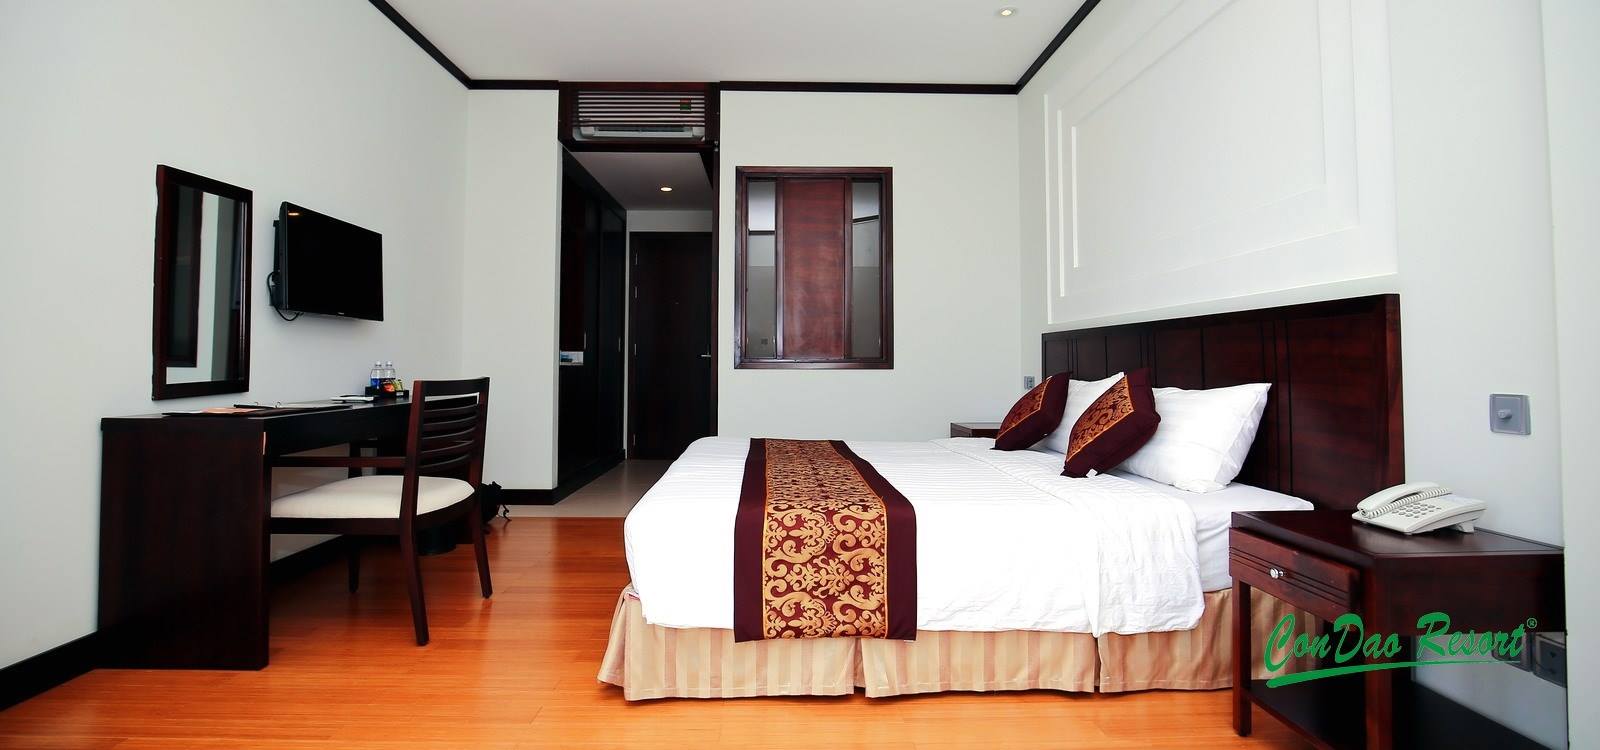 Phòng nghỉ tại Côn Đảo Resort